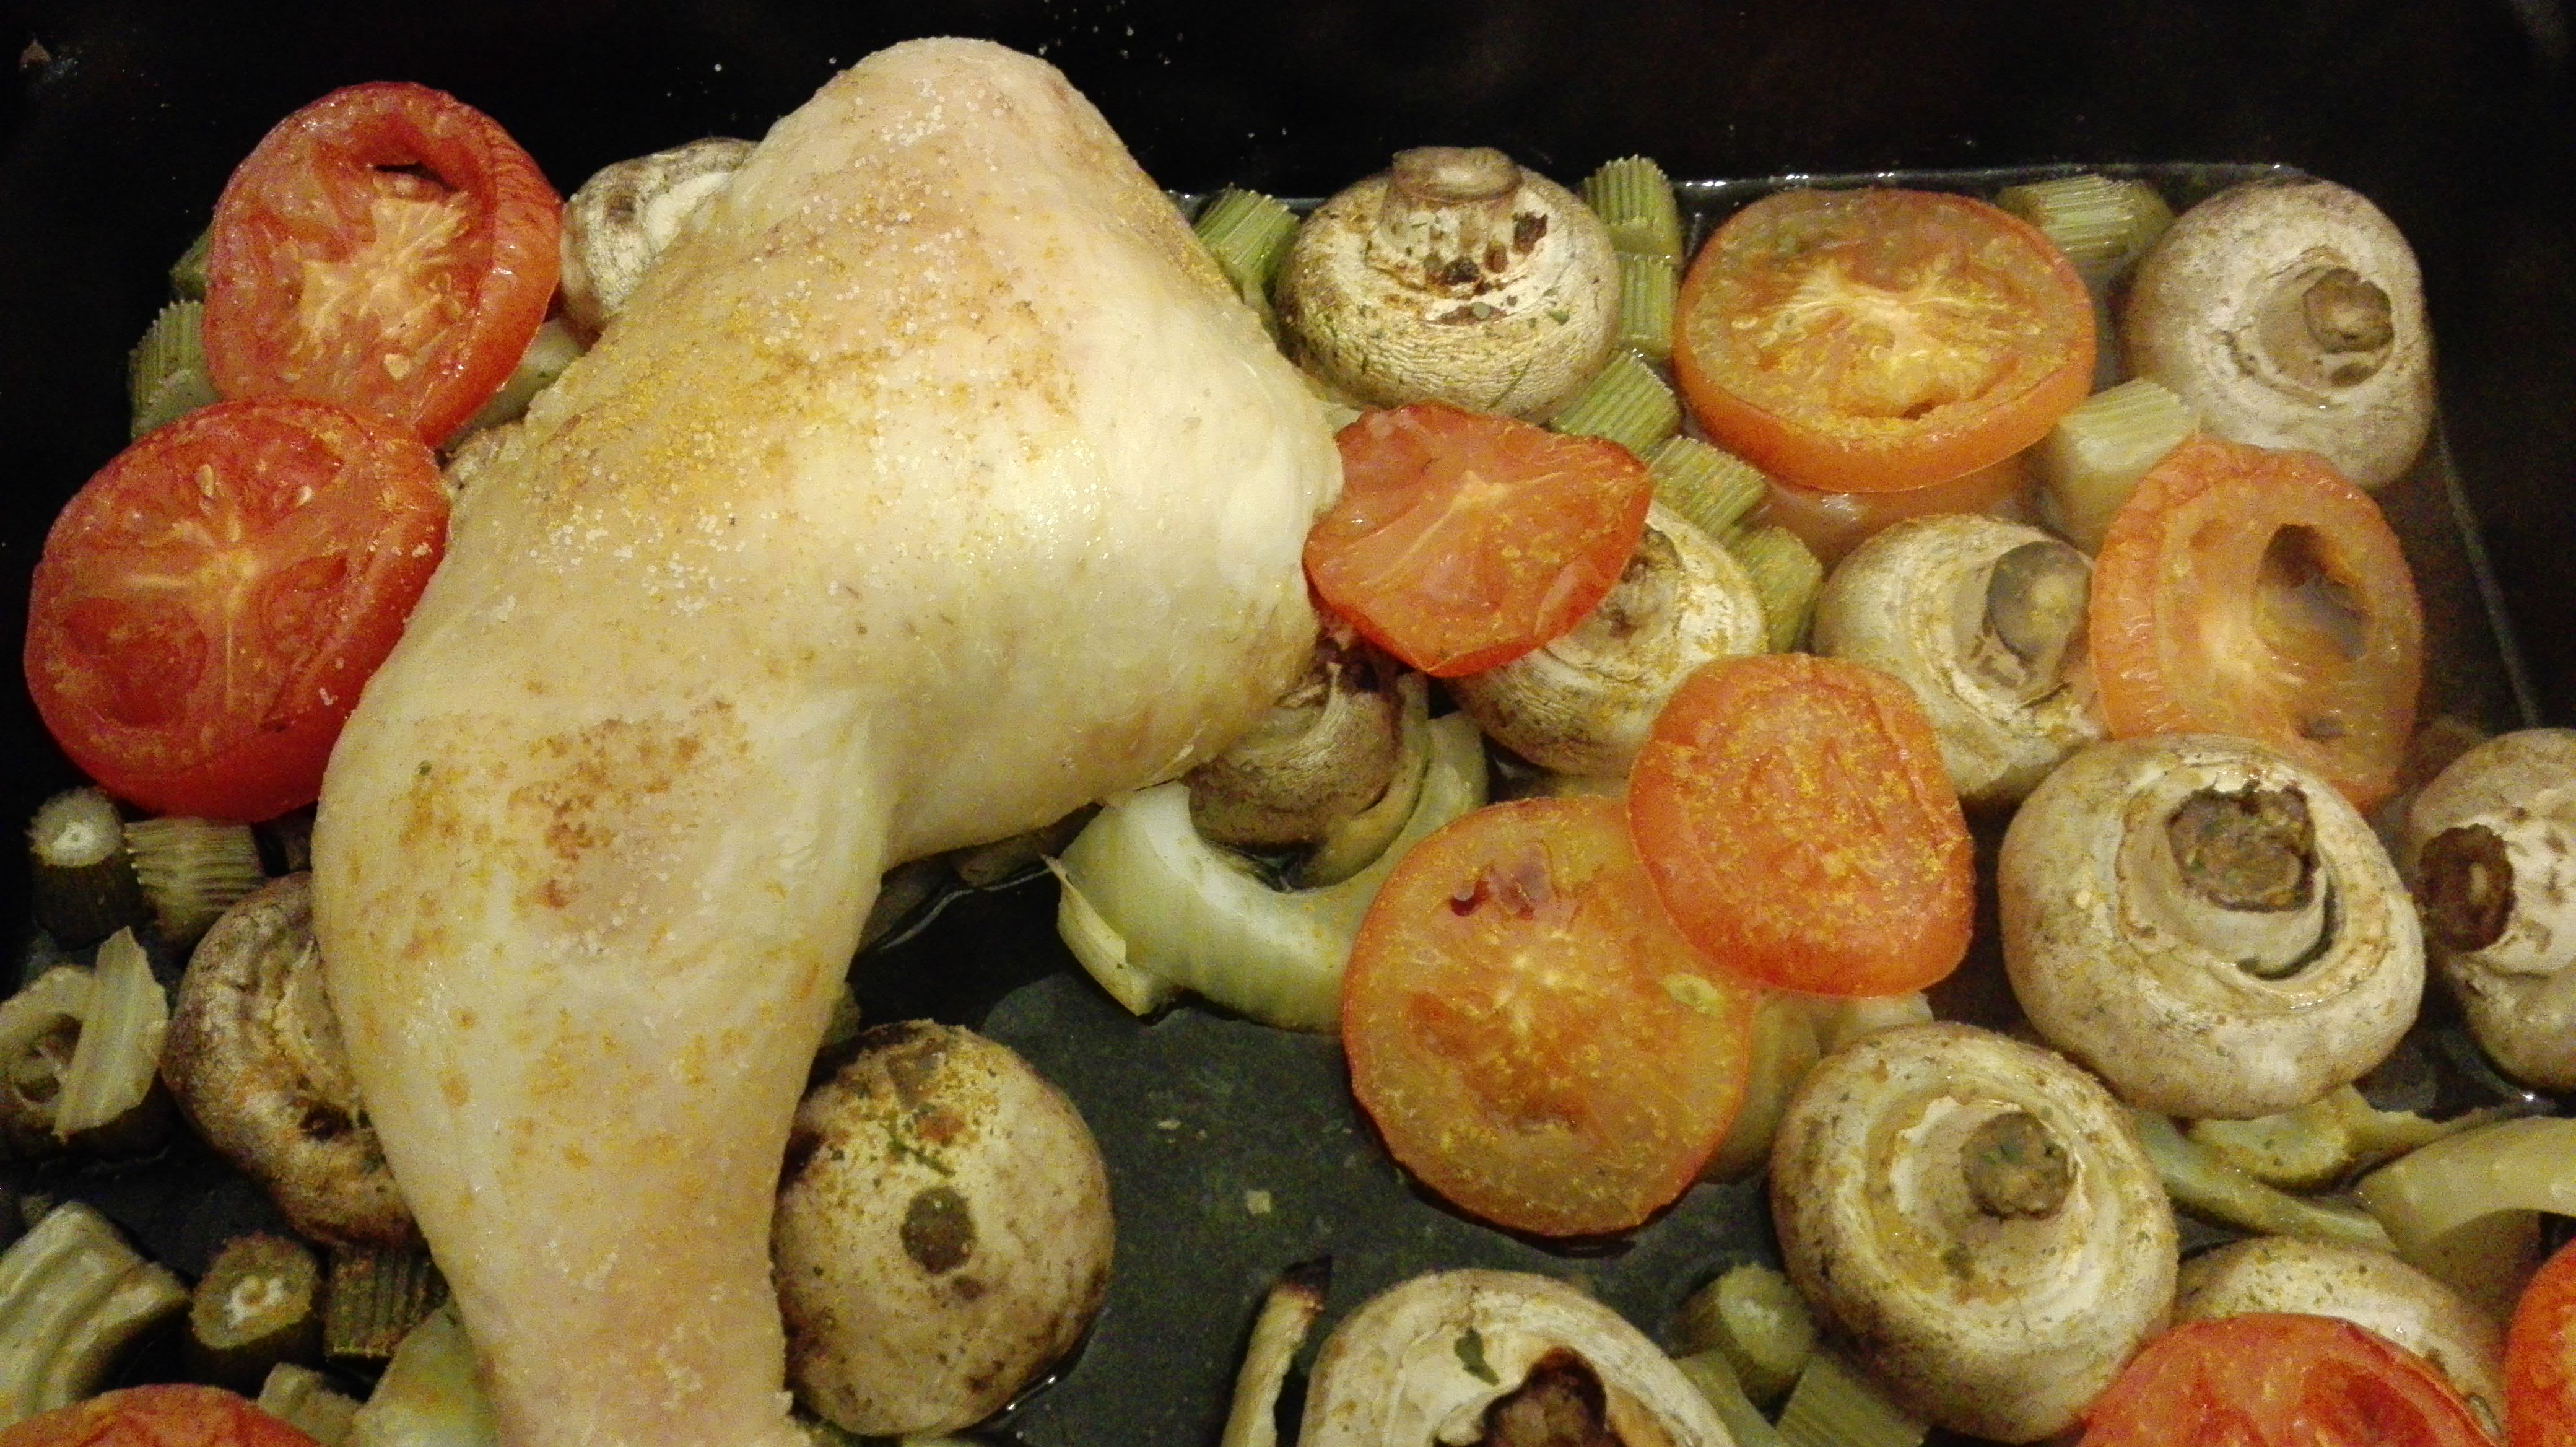 Hühnerkeule im Gemüsebett — Kilopurzel